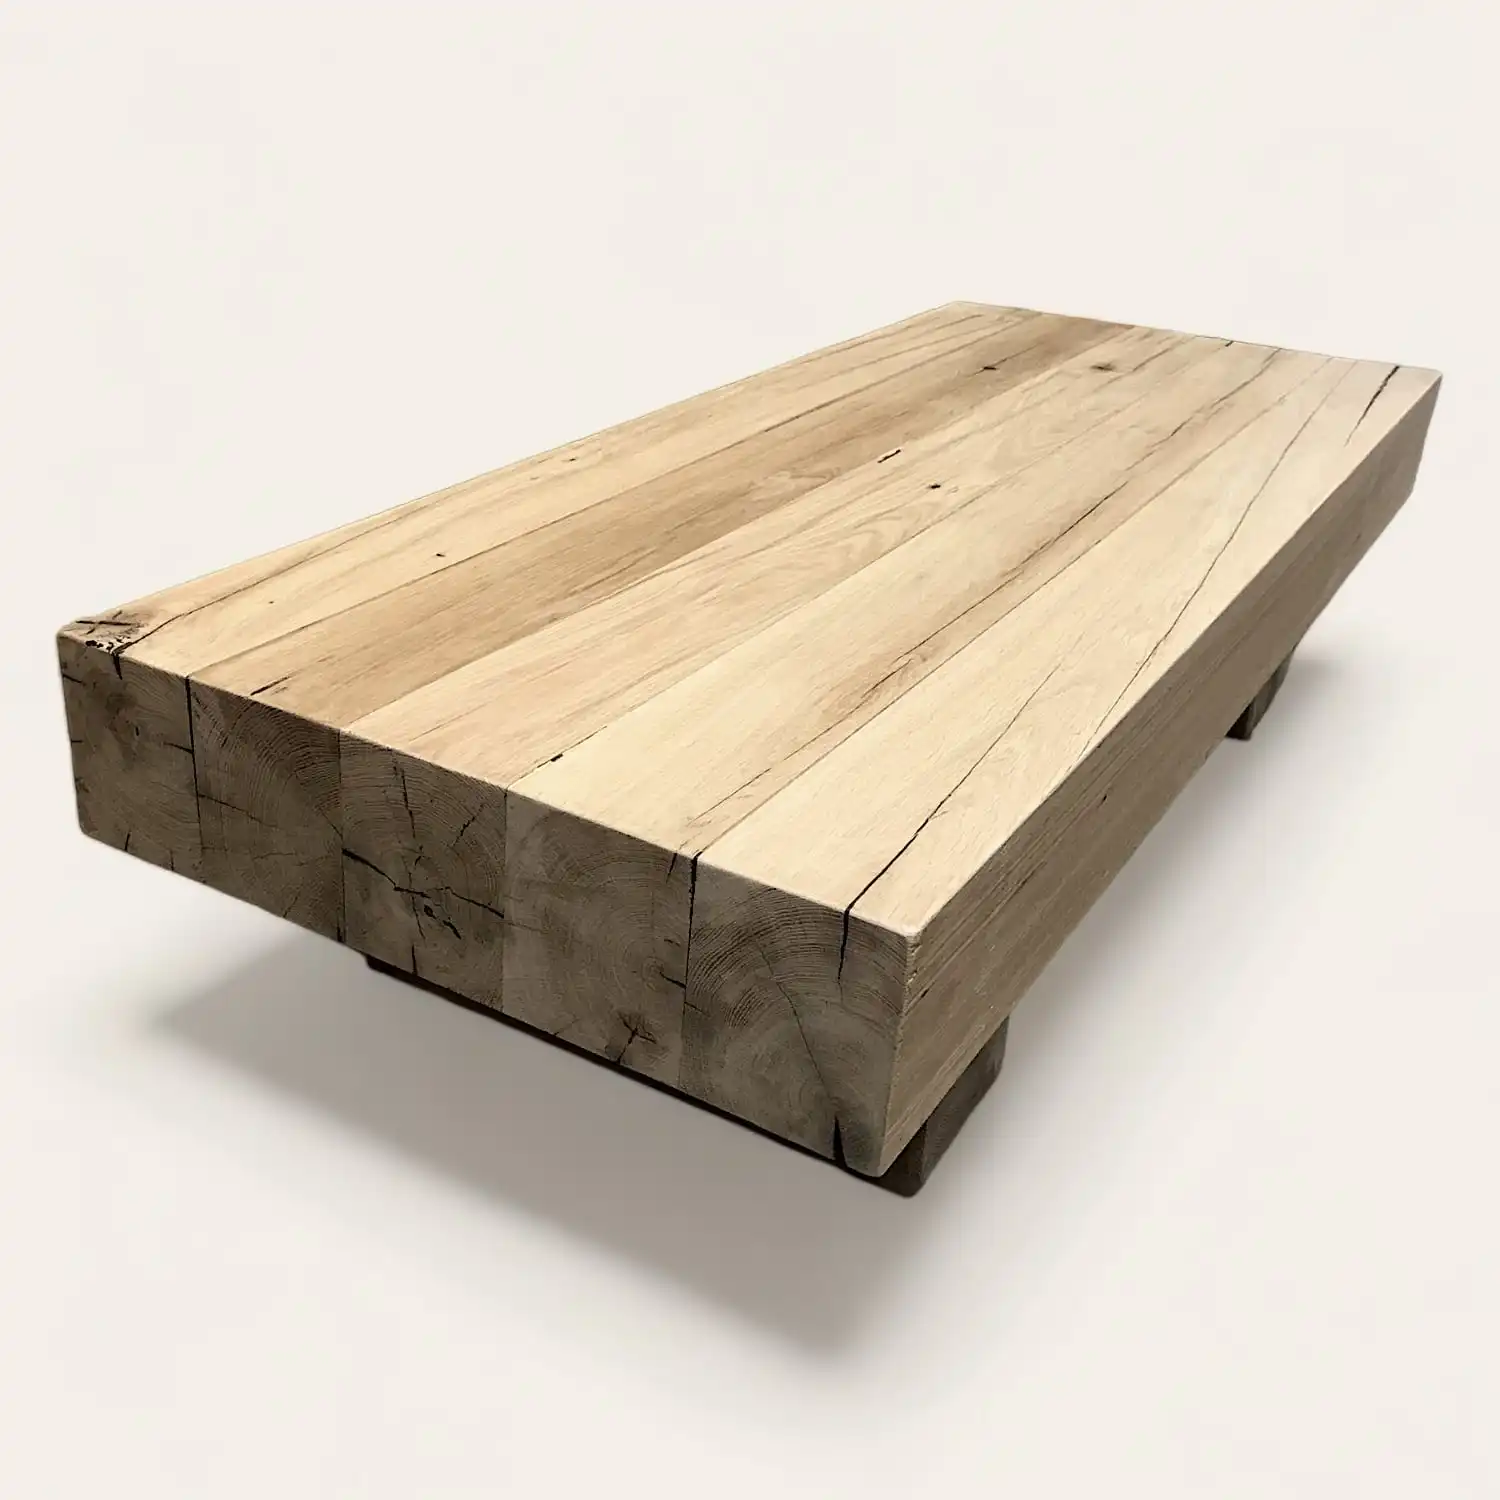  Une table basse rustique en bois sur fond blanc. 